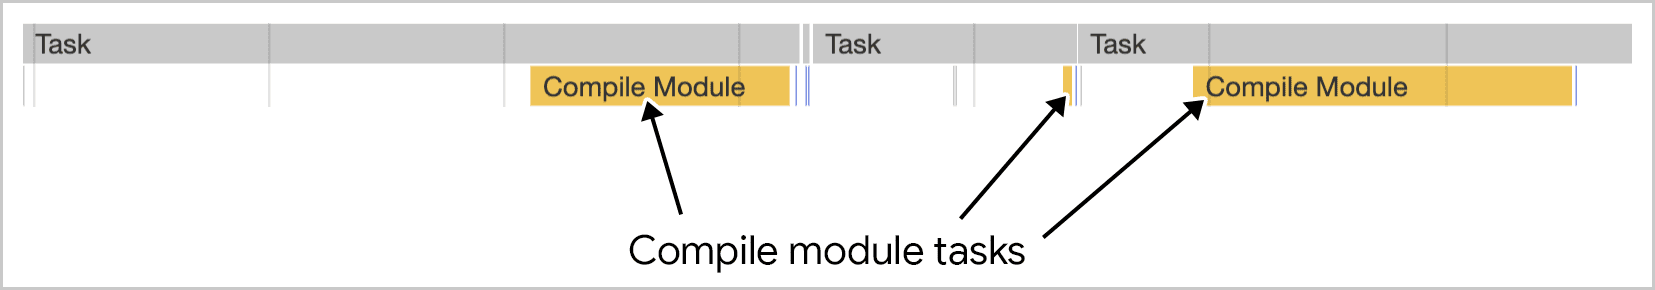 הידור של מודולים פועל במספר משימות, כפי שהוא מוצג באופן חזותי בכלי הפיתוח ל-Chrome.